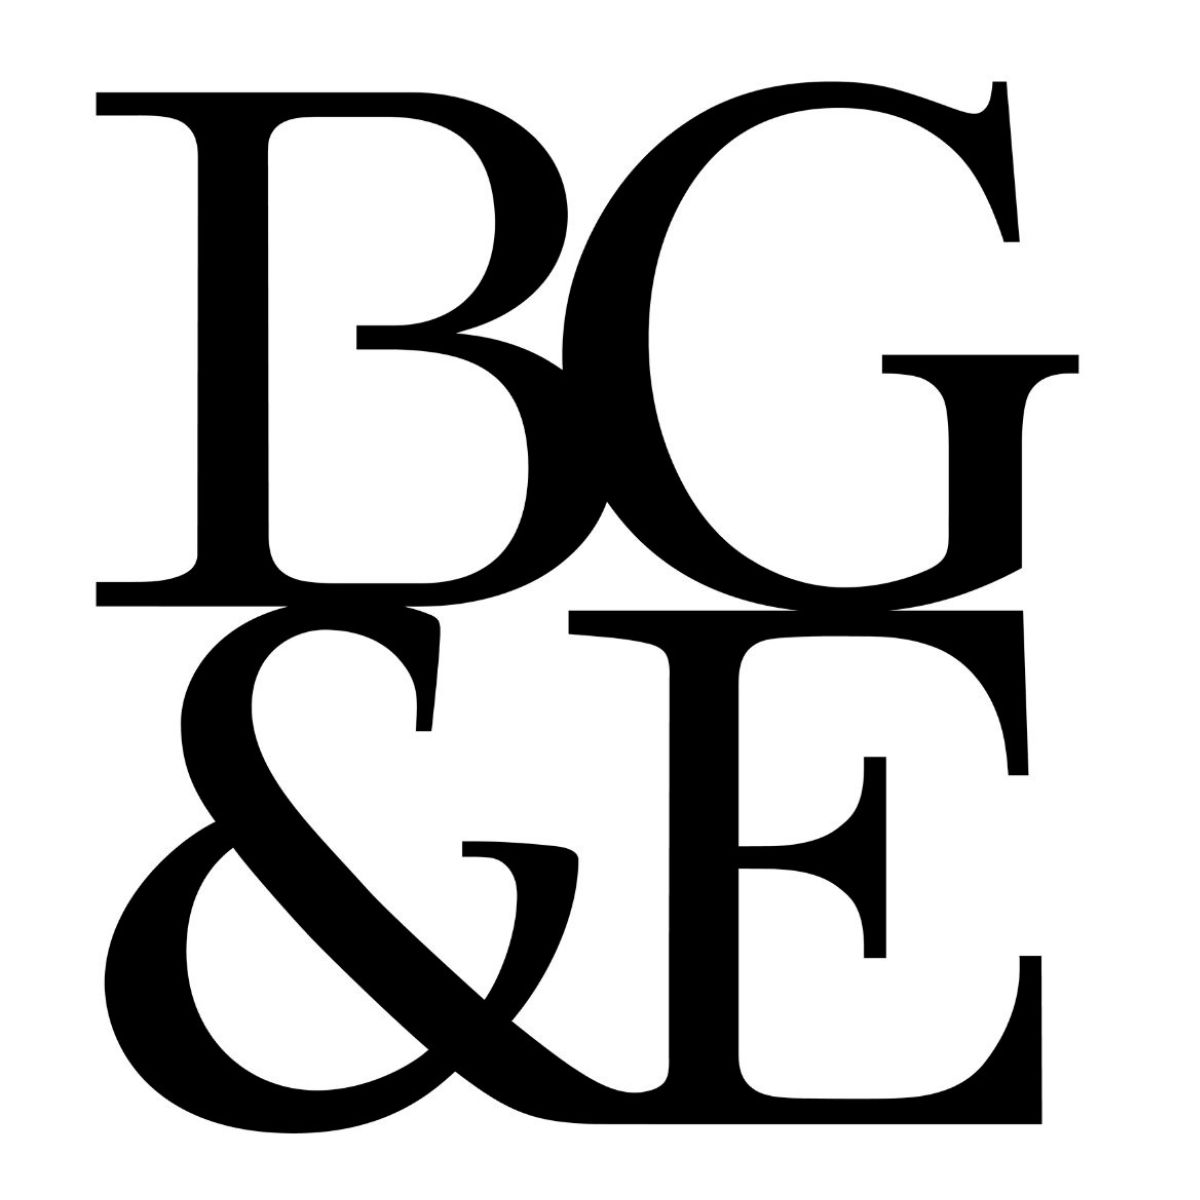 BG&E Pty Limited Logo